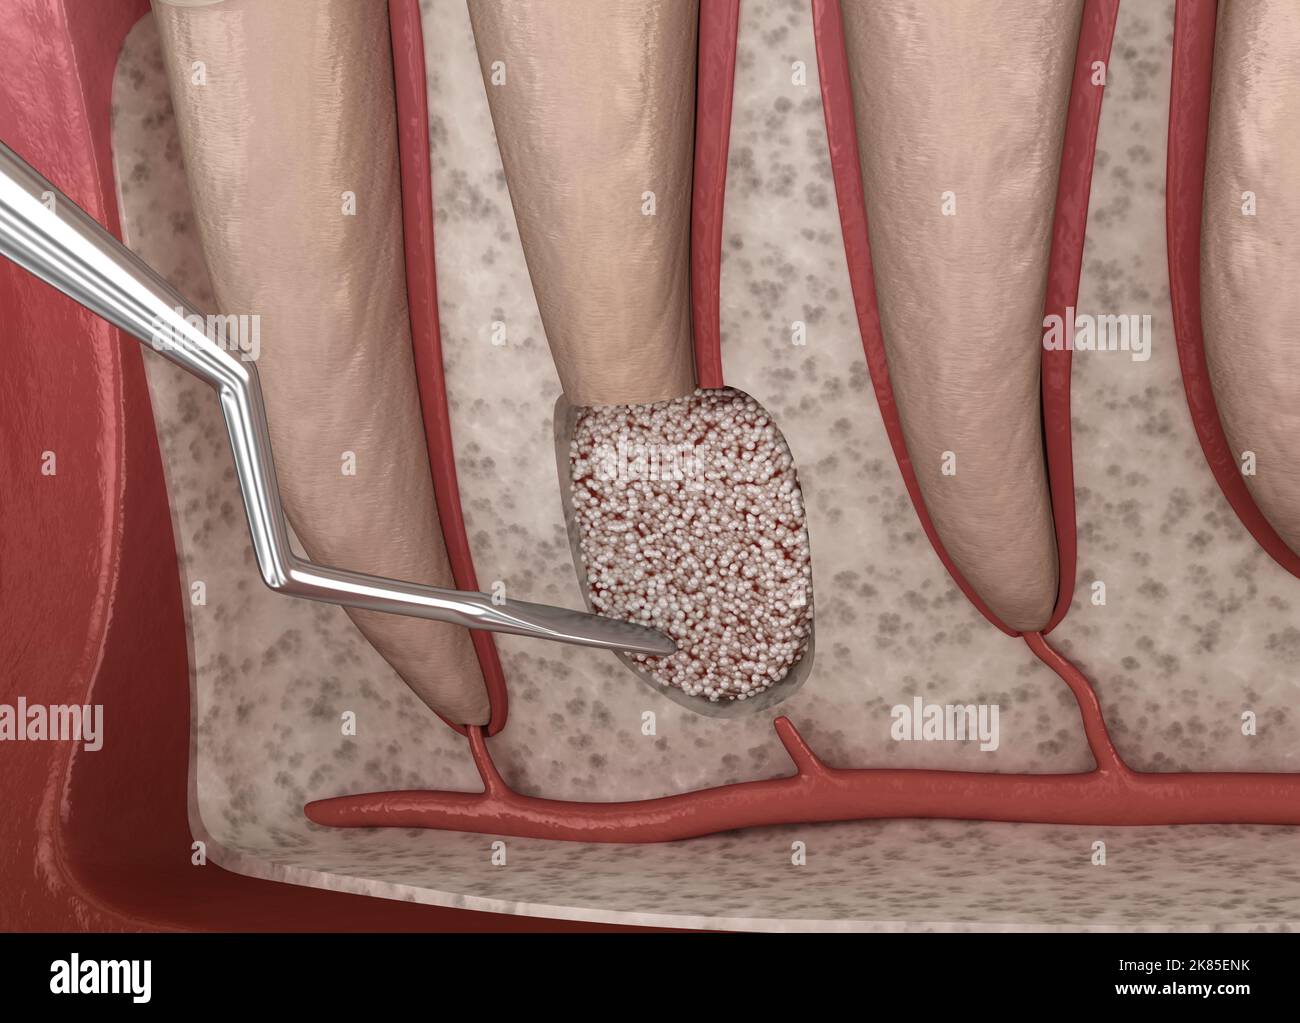 Chirurgie de cystectomie dentaire - récupération après périostite . Illustration 3D médicale précise Banque D'Images